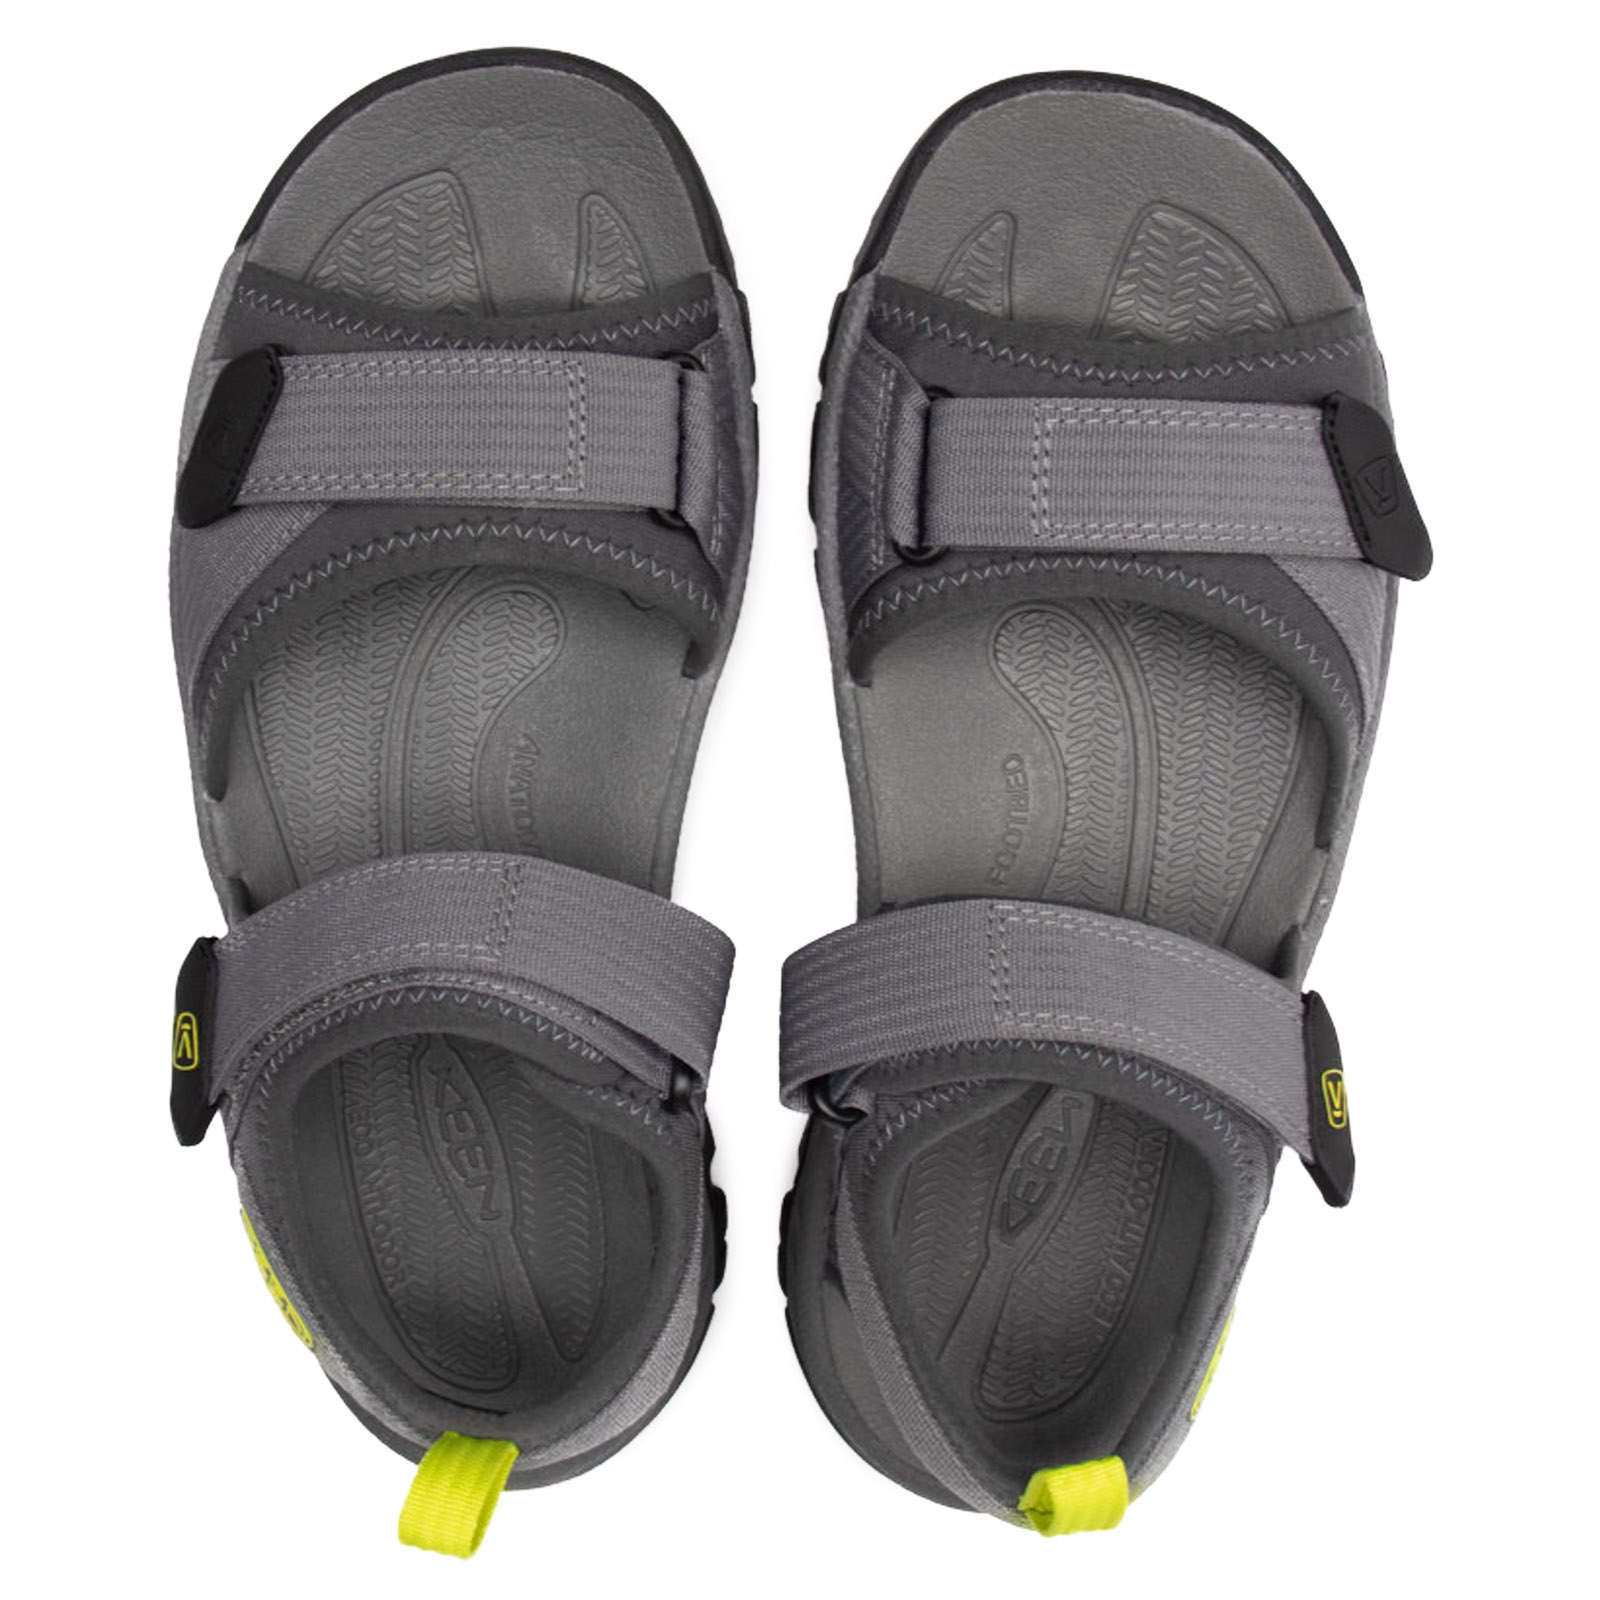 Keen Targhee III Synthetic Textile Men's Hiking Sandals#color_steel grey evening primrose